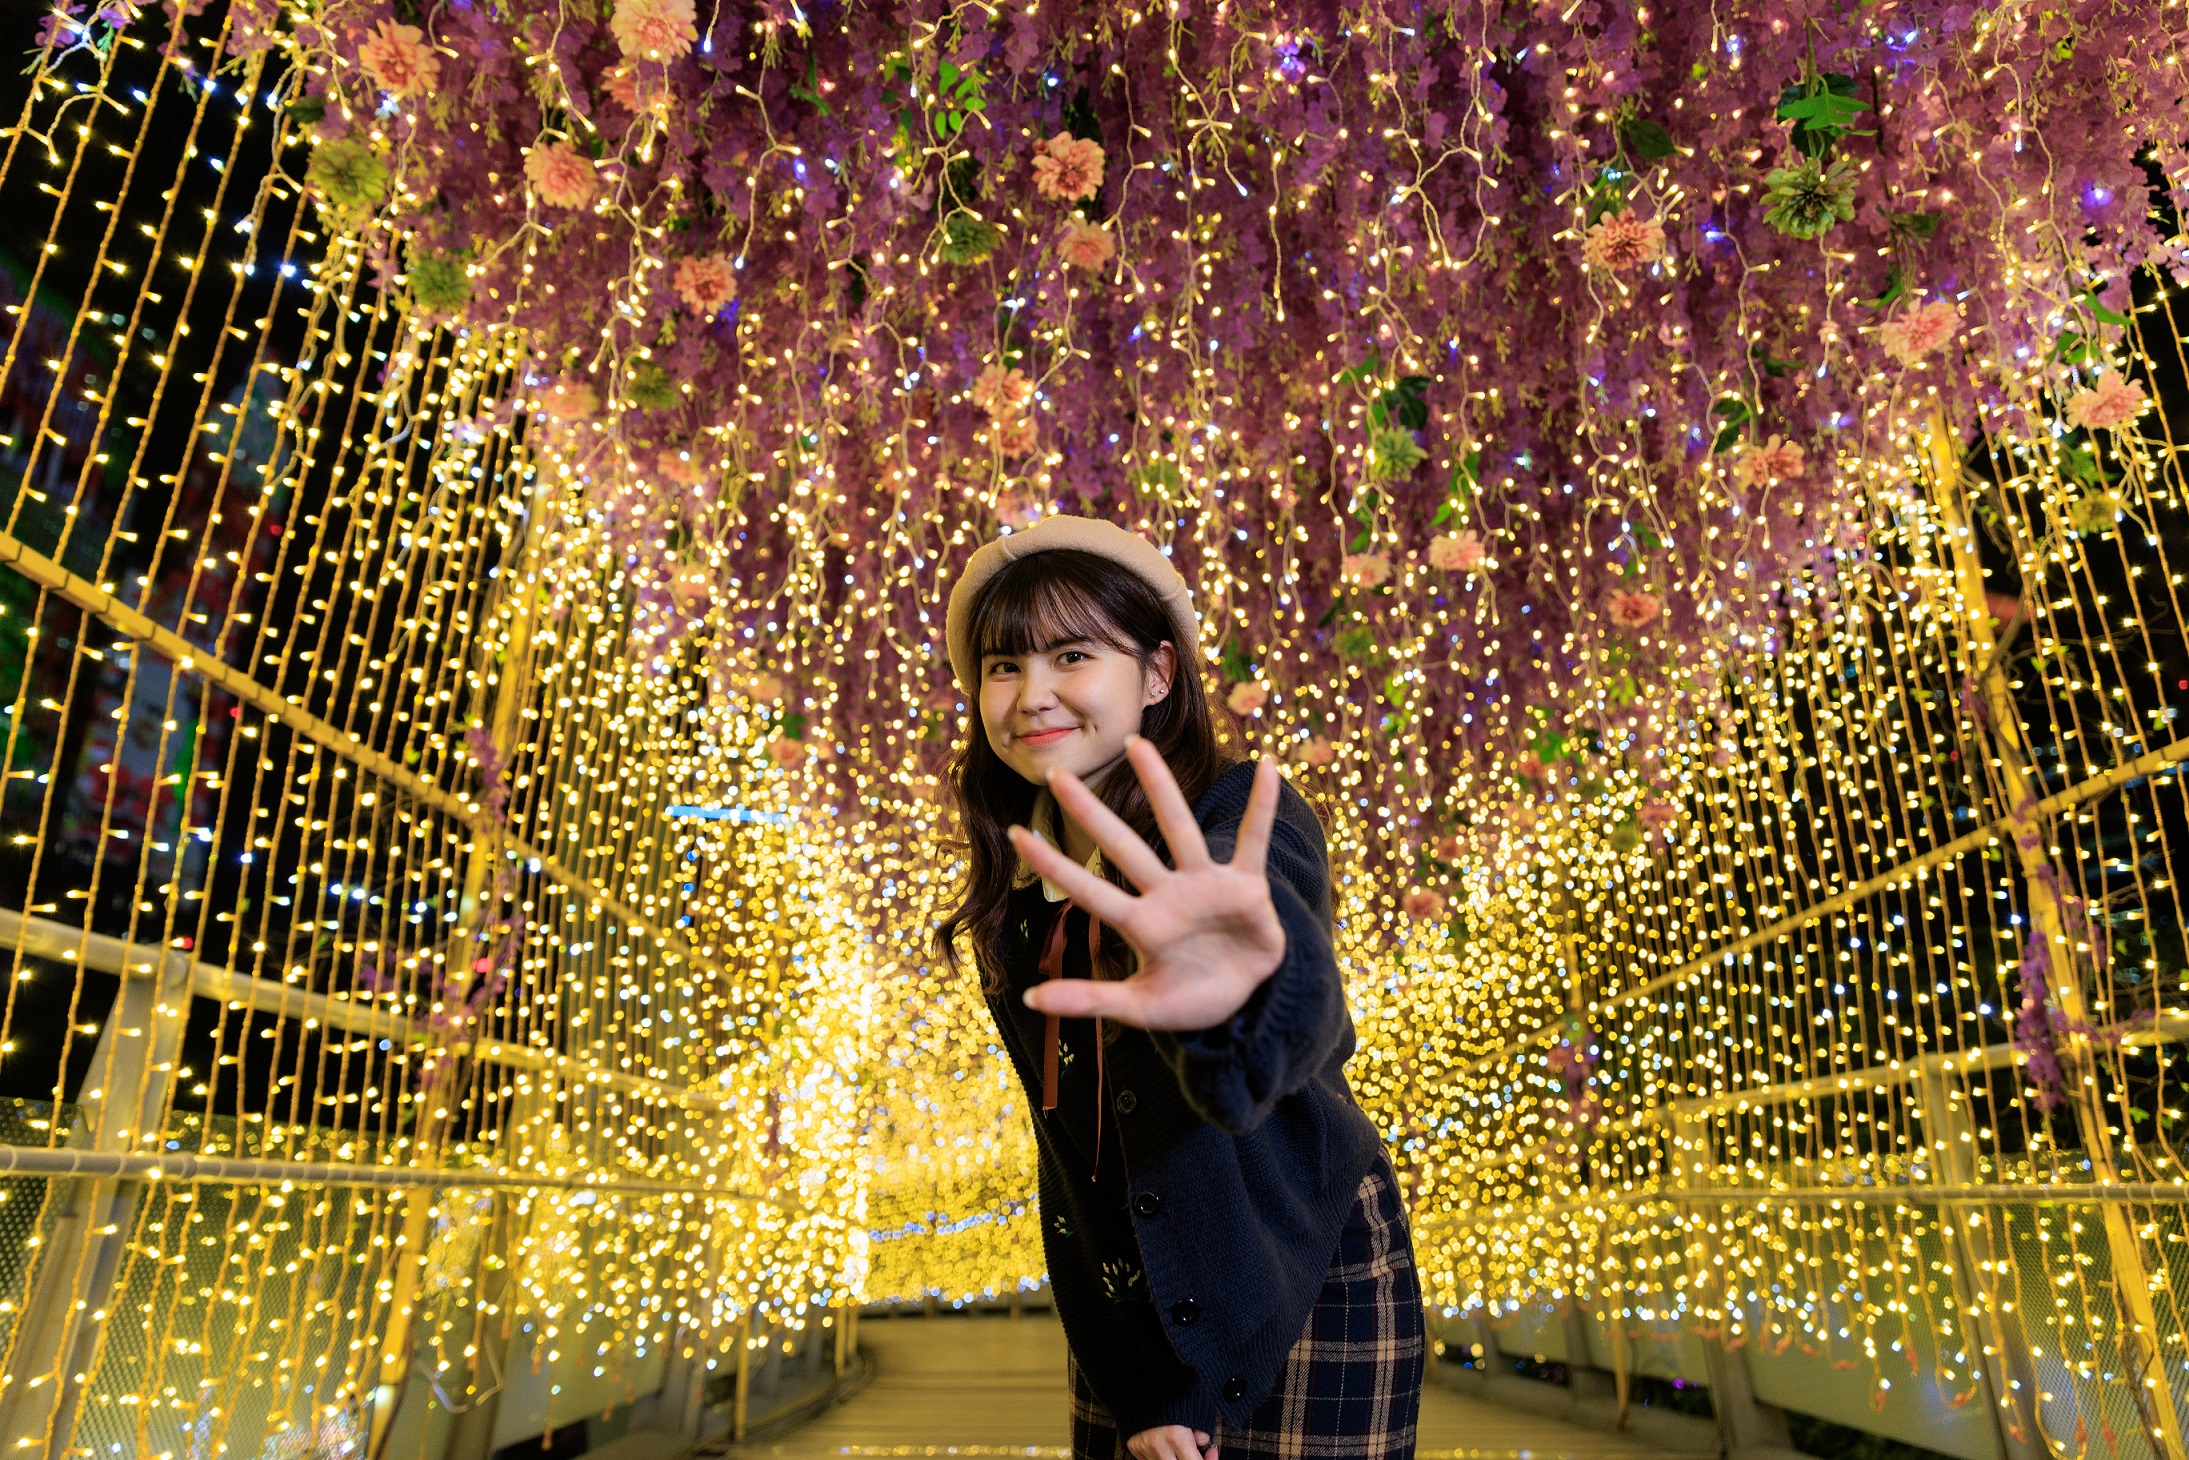 「紫藤精靈光廊」以花花世界的元素營造耶誕浪漫氛圍